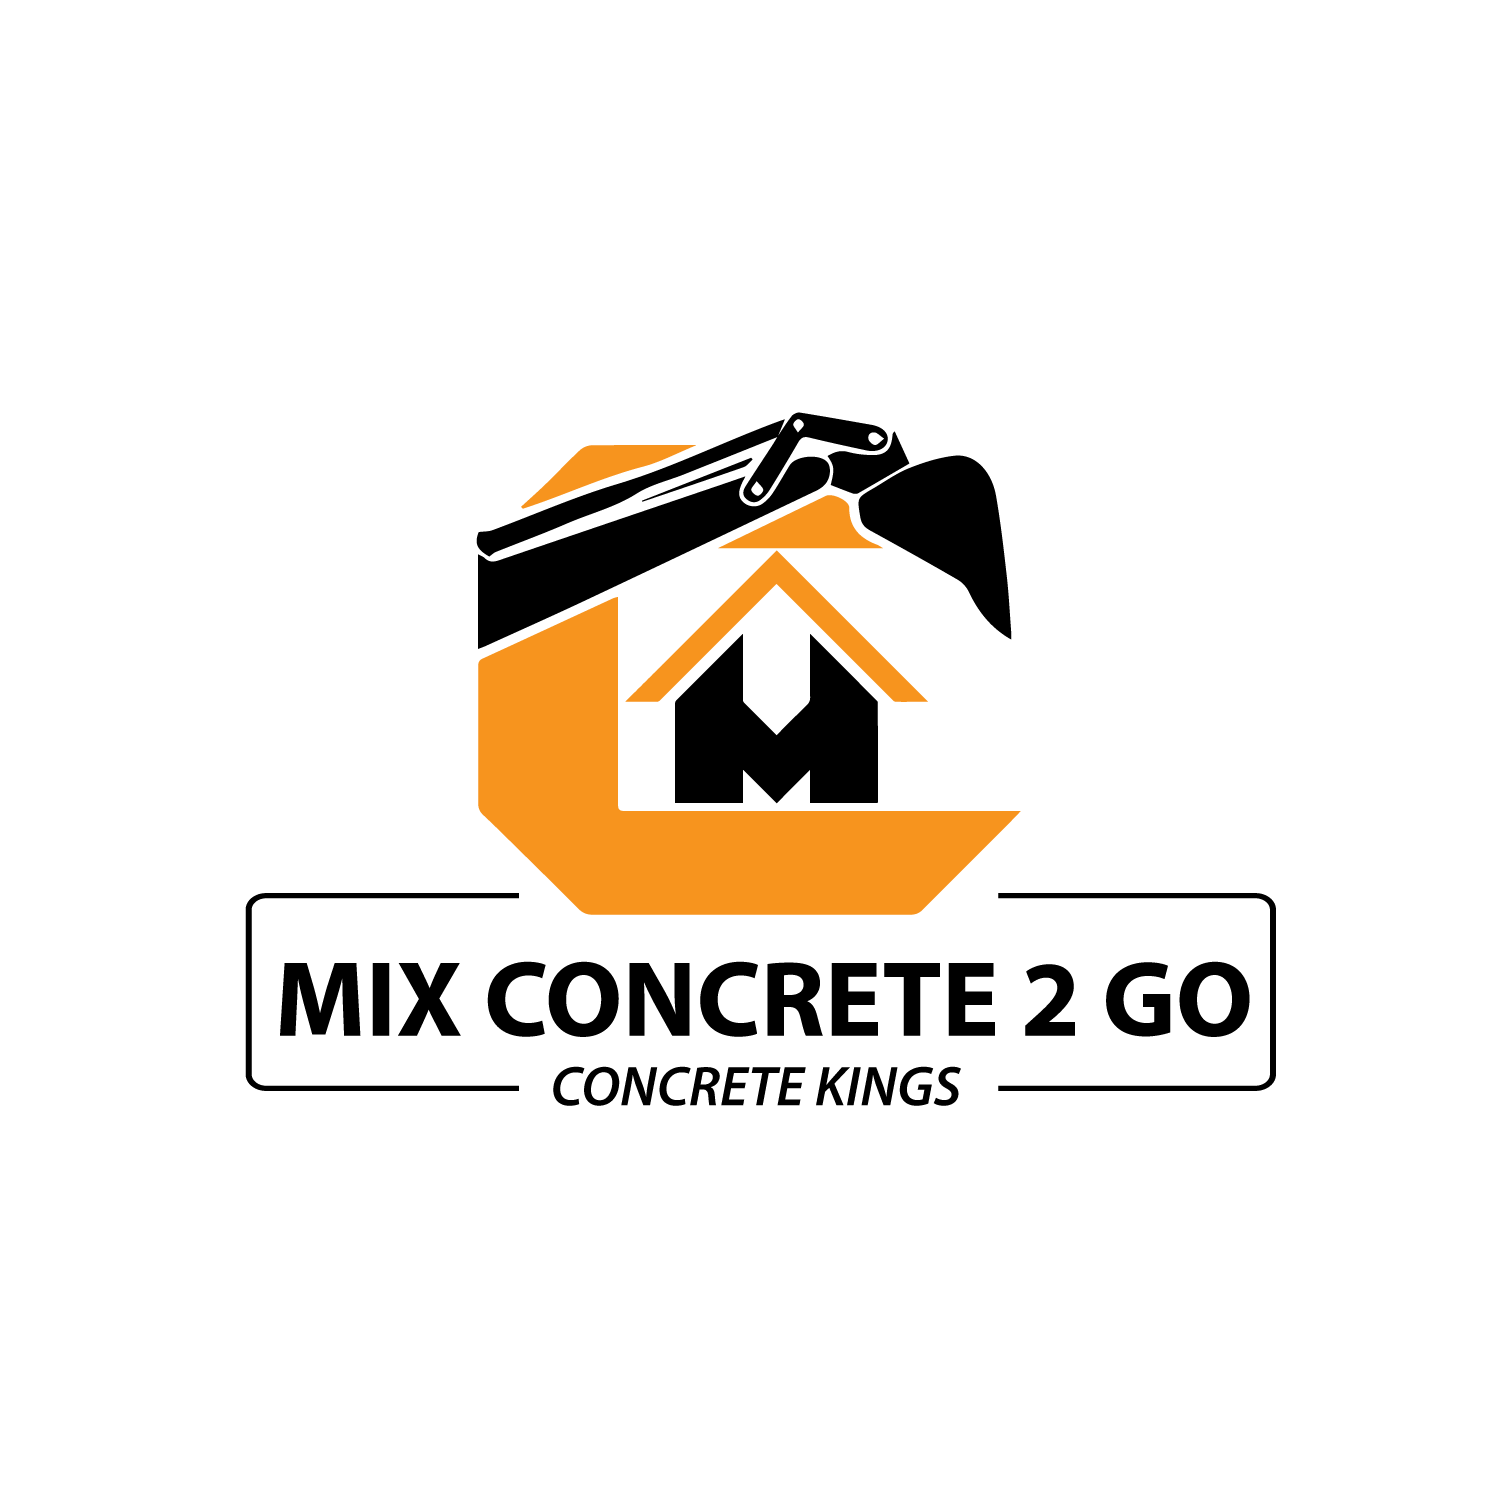 Mix Concrete 2 Go.2 - Social Media Marketing